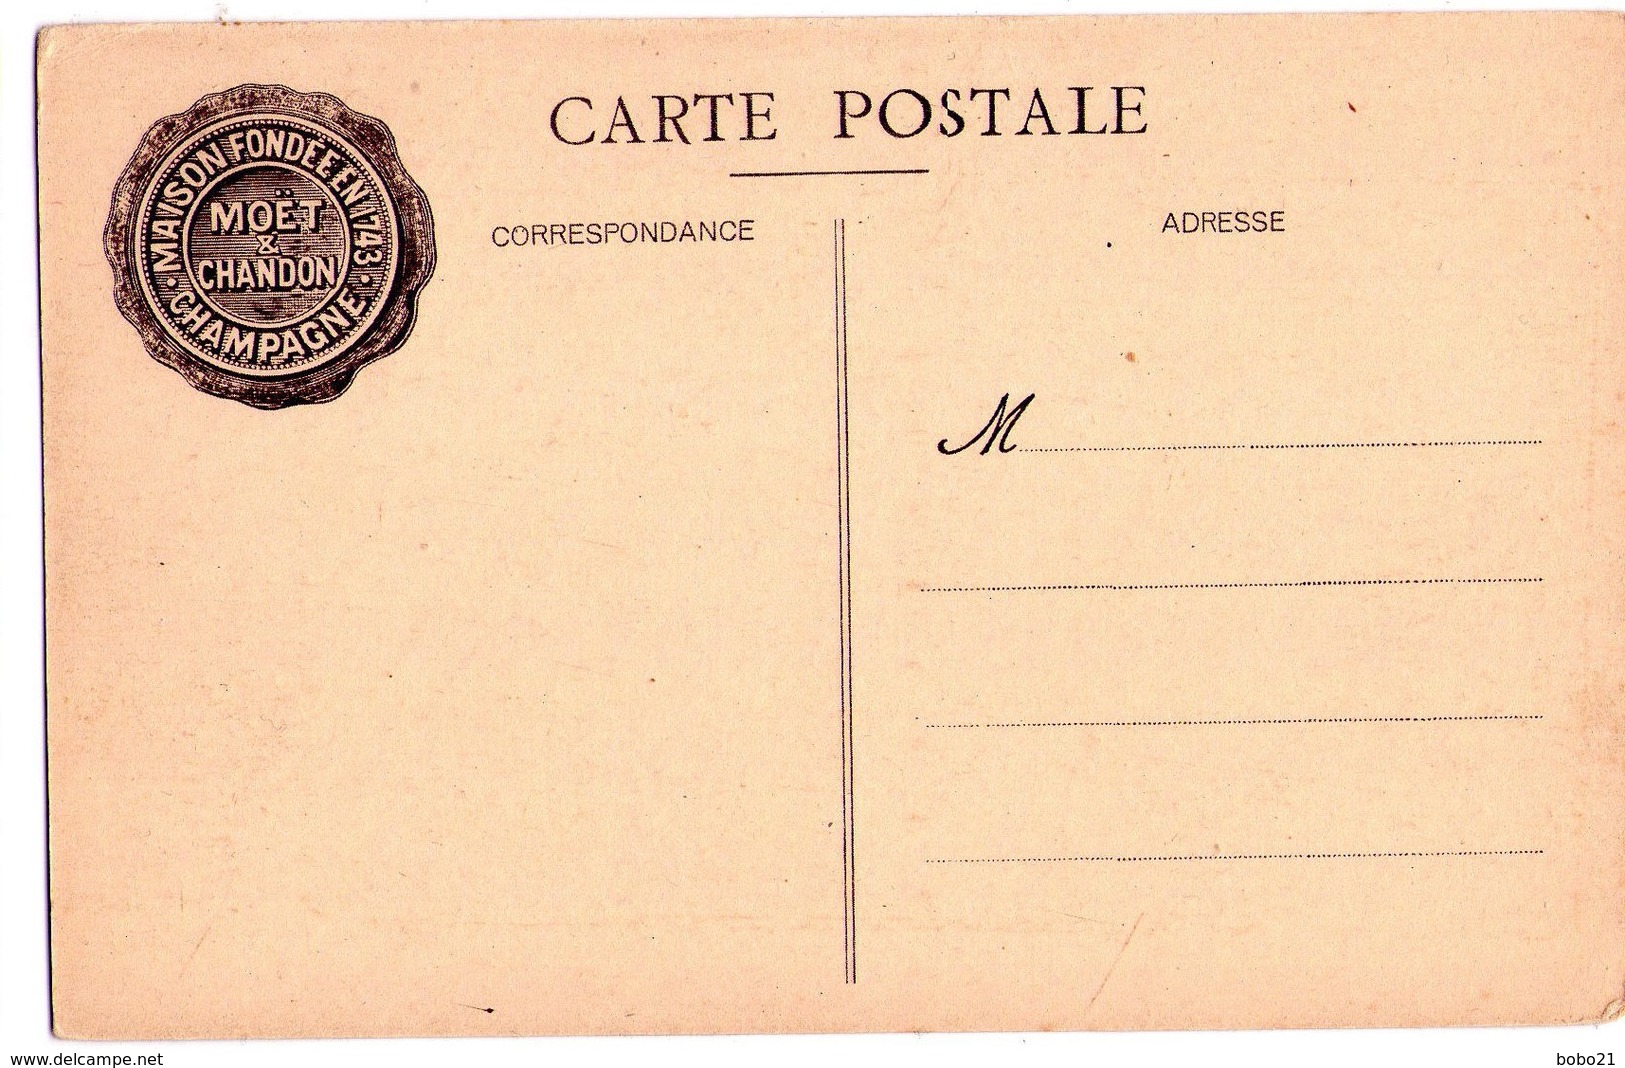 1891 - 11 Cp non circulées sur la Maison " Moët et Chandon " - Em. Choque imp. éd. à Epernay -